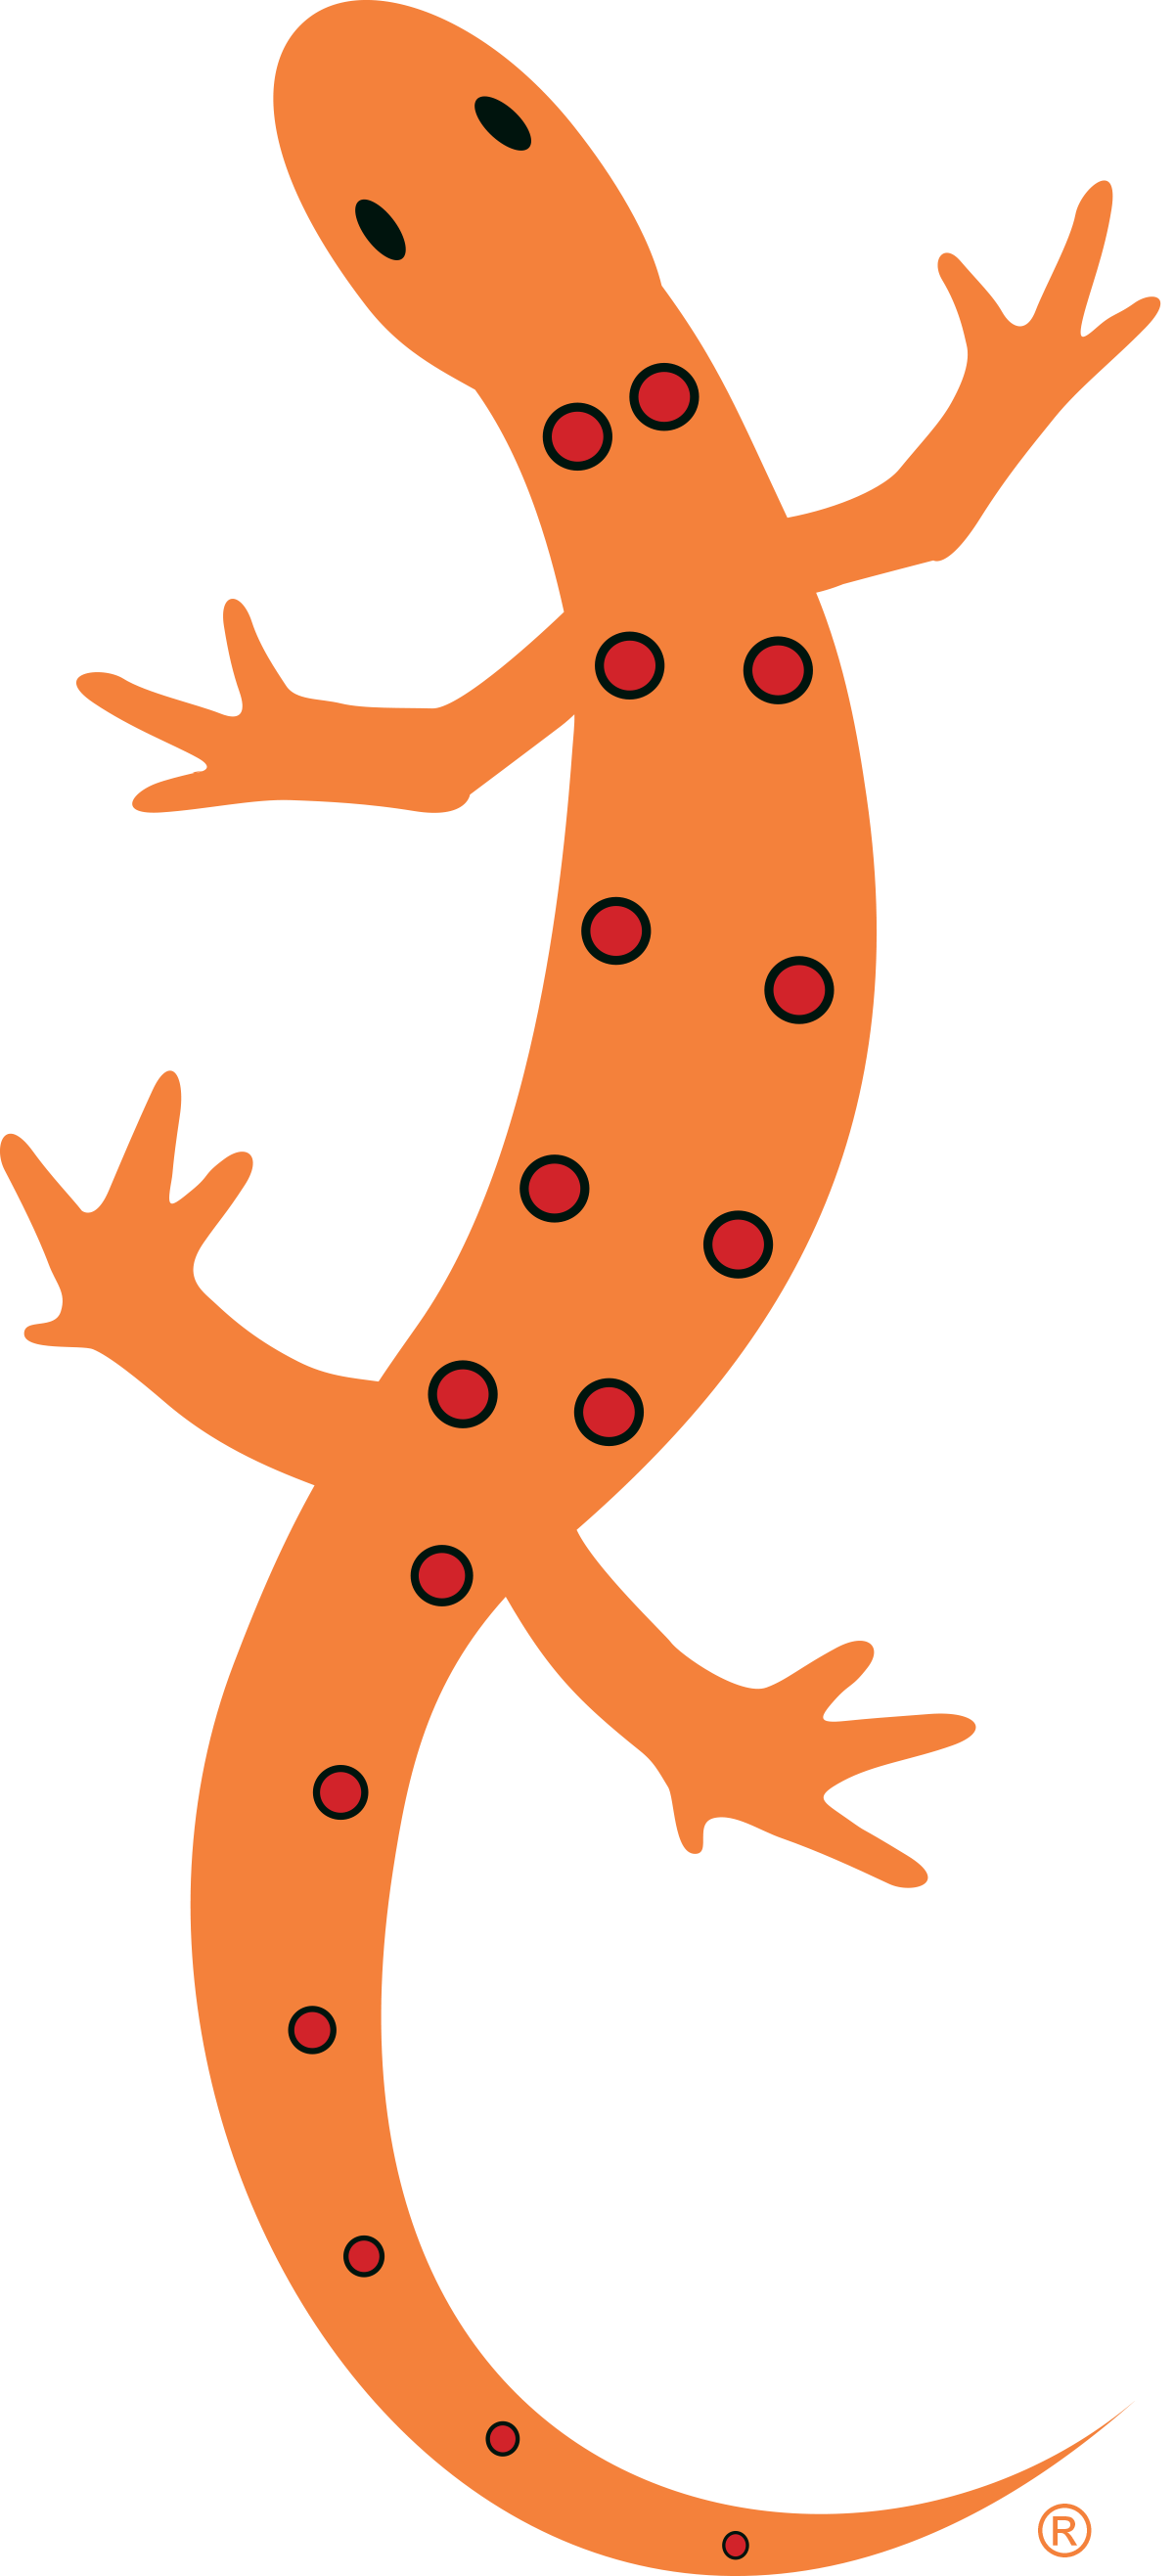 newt logo